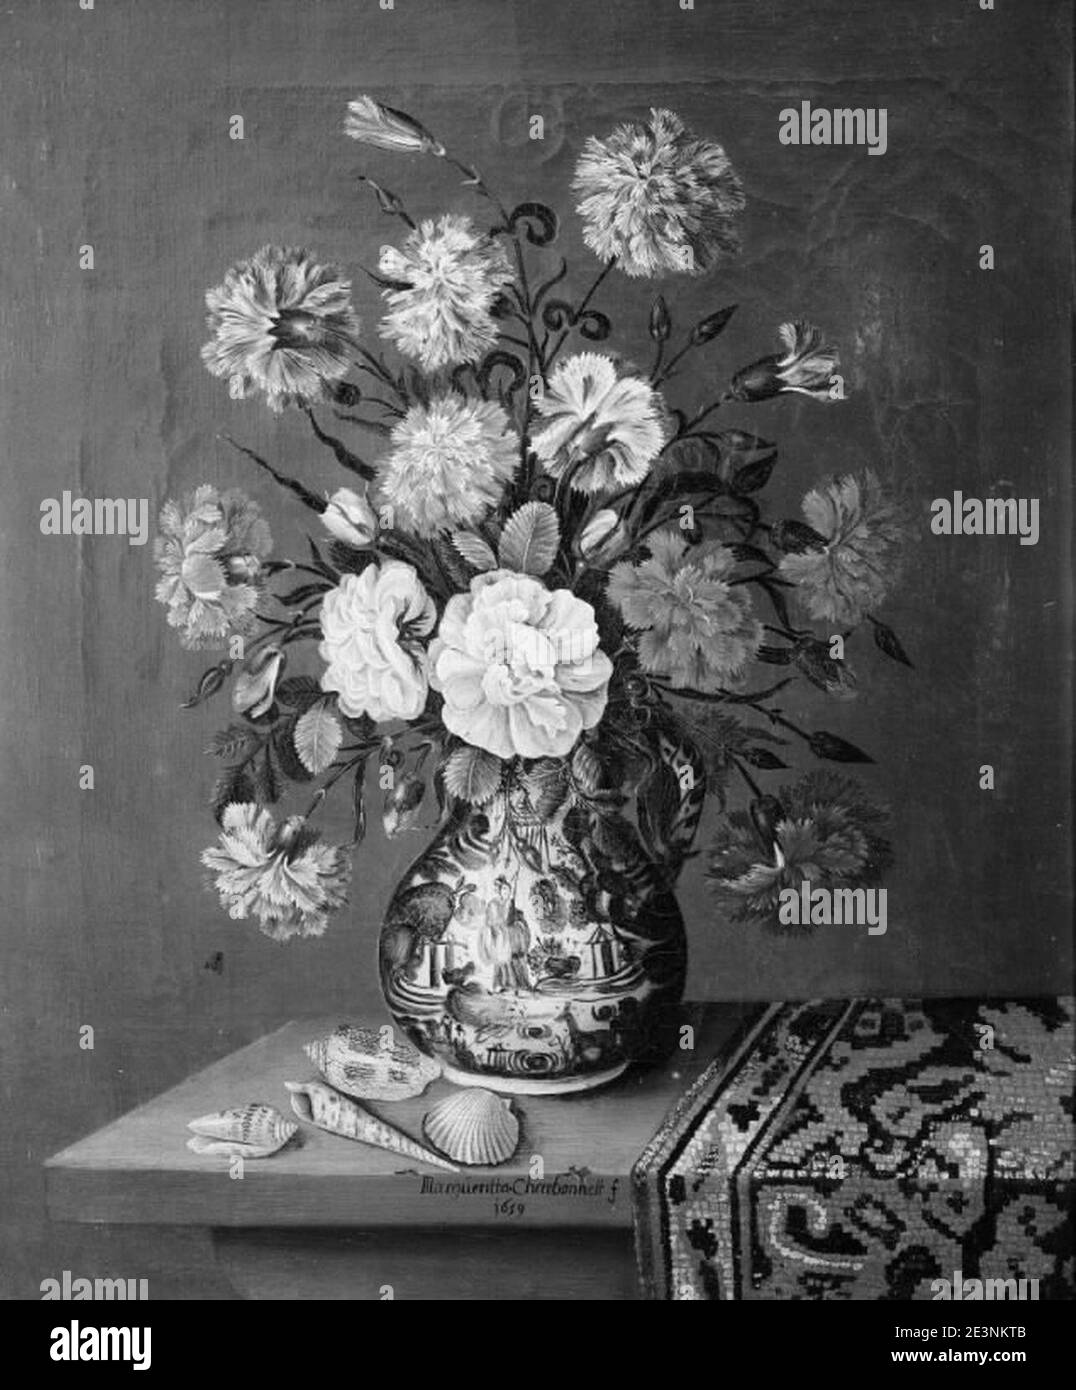 Margueritta Charbonnet - bouquet de fleurs sur une table - Banque D'Images